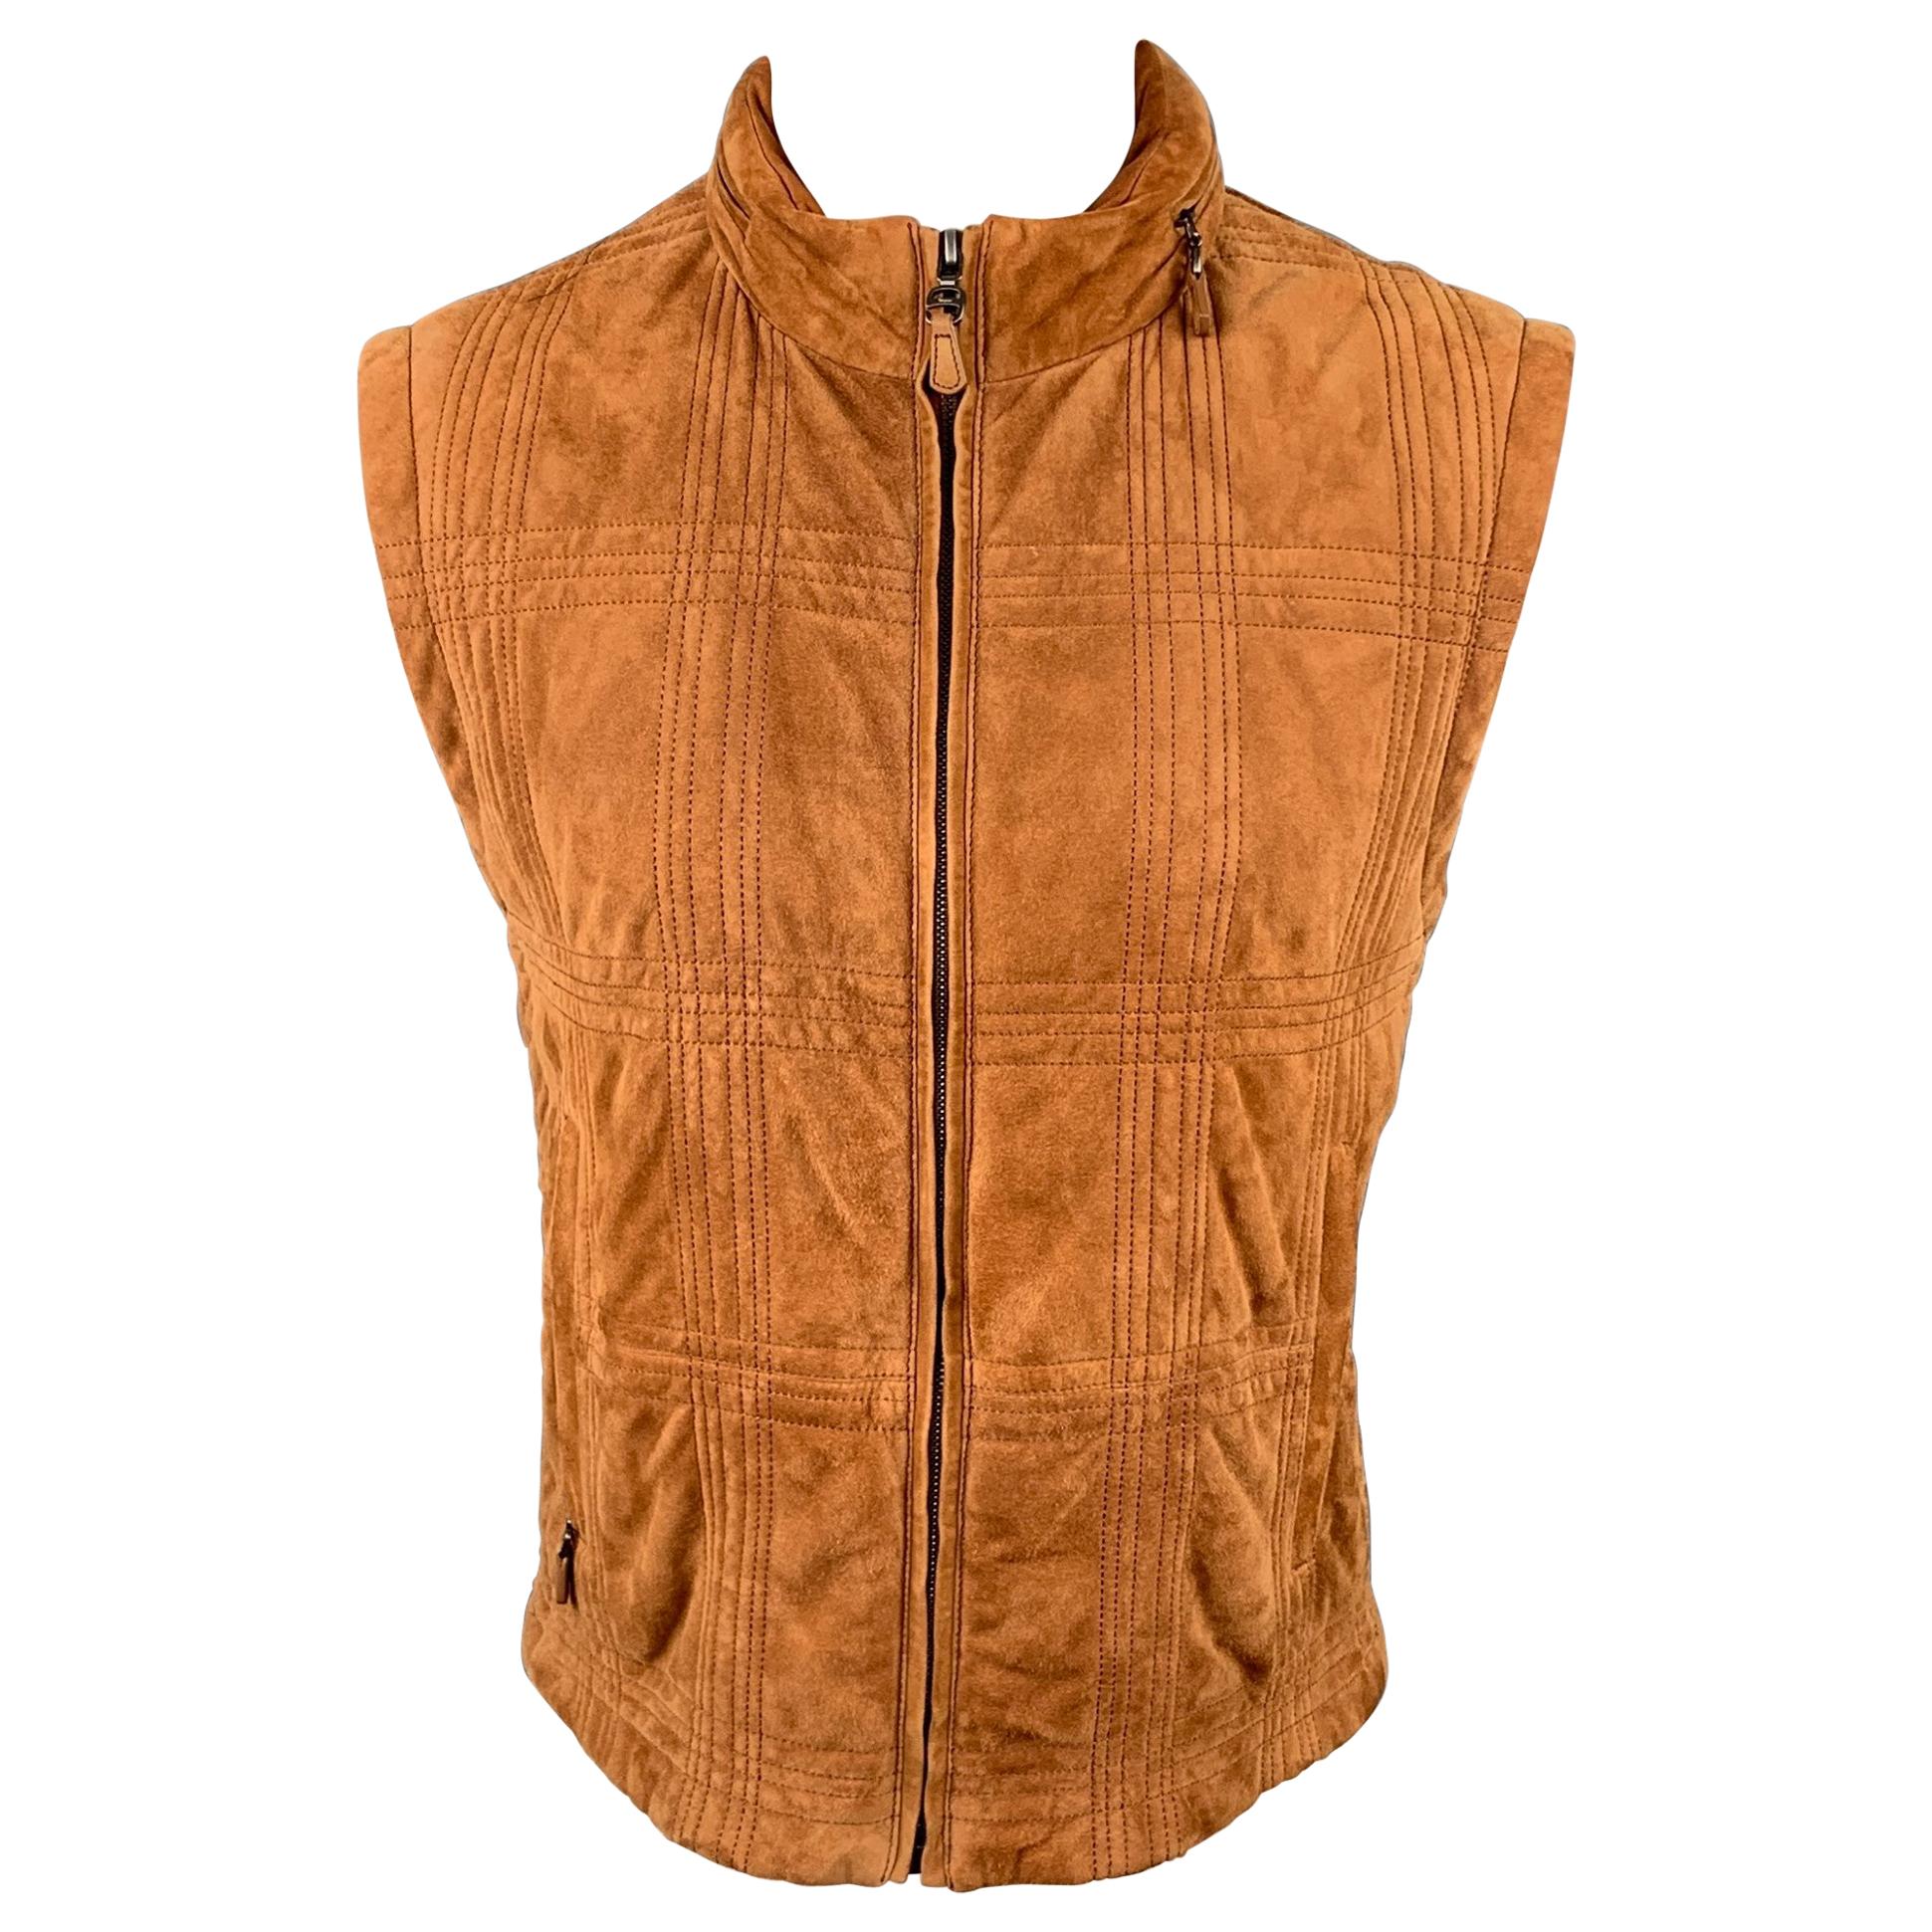 SALVATORE FERRAGAMO Size 42 Tan Suede Quilted Zip Up Hooded Vest